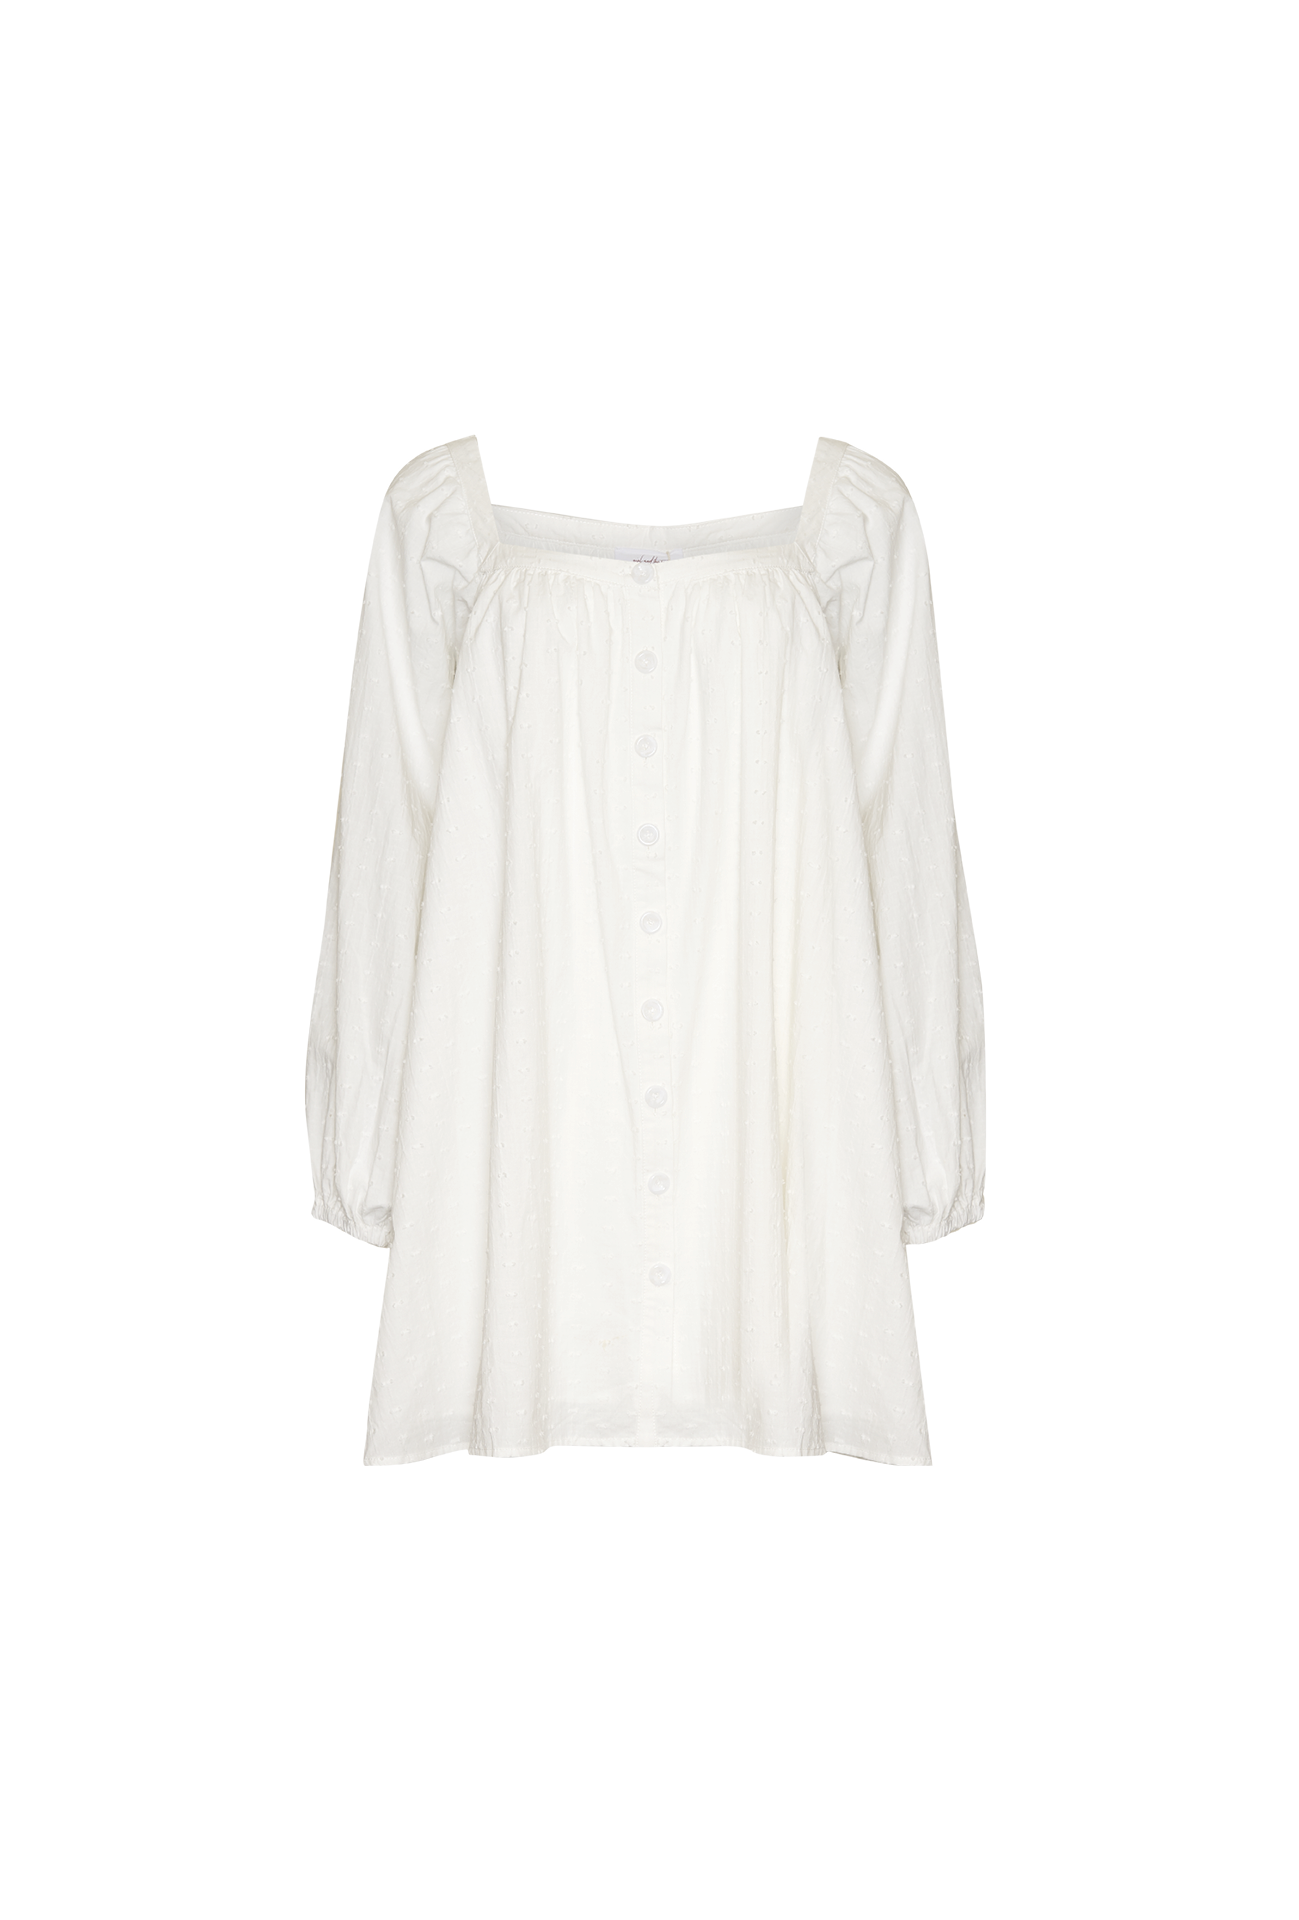 OLIVIA MINI DRESS - WHITE SPOT